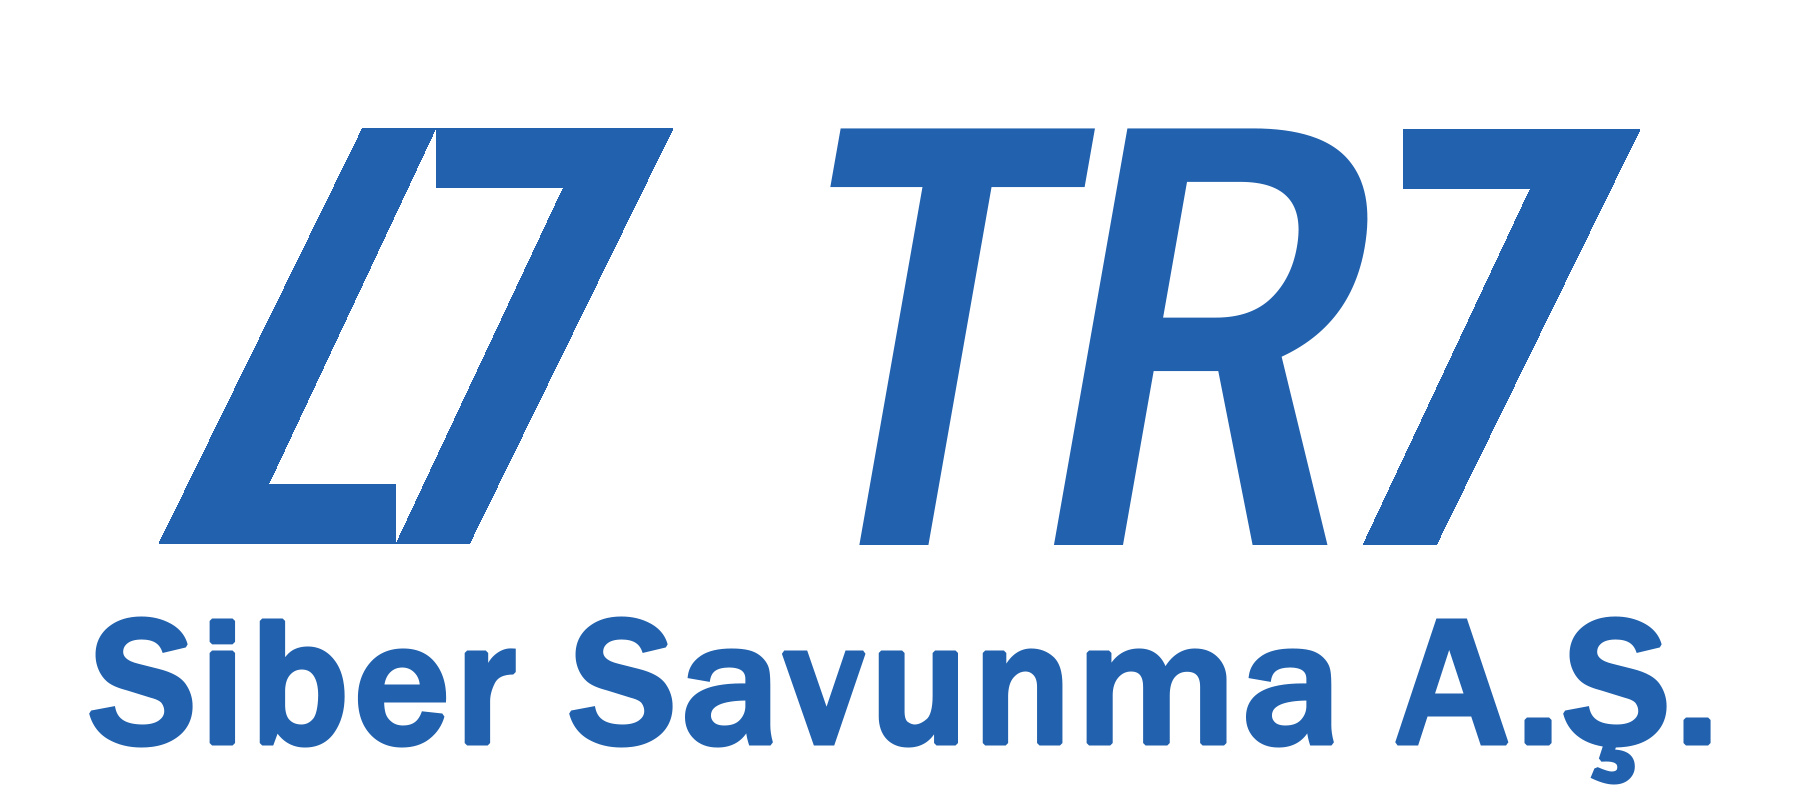 TR7 SİBER SAVUNMA A.Ş.